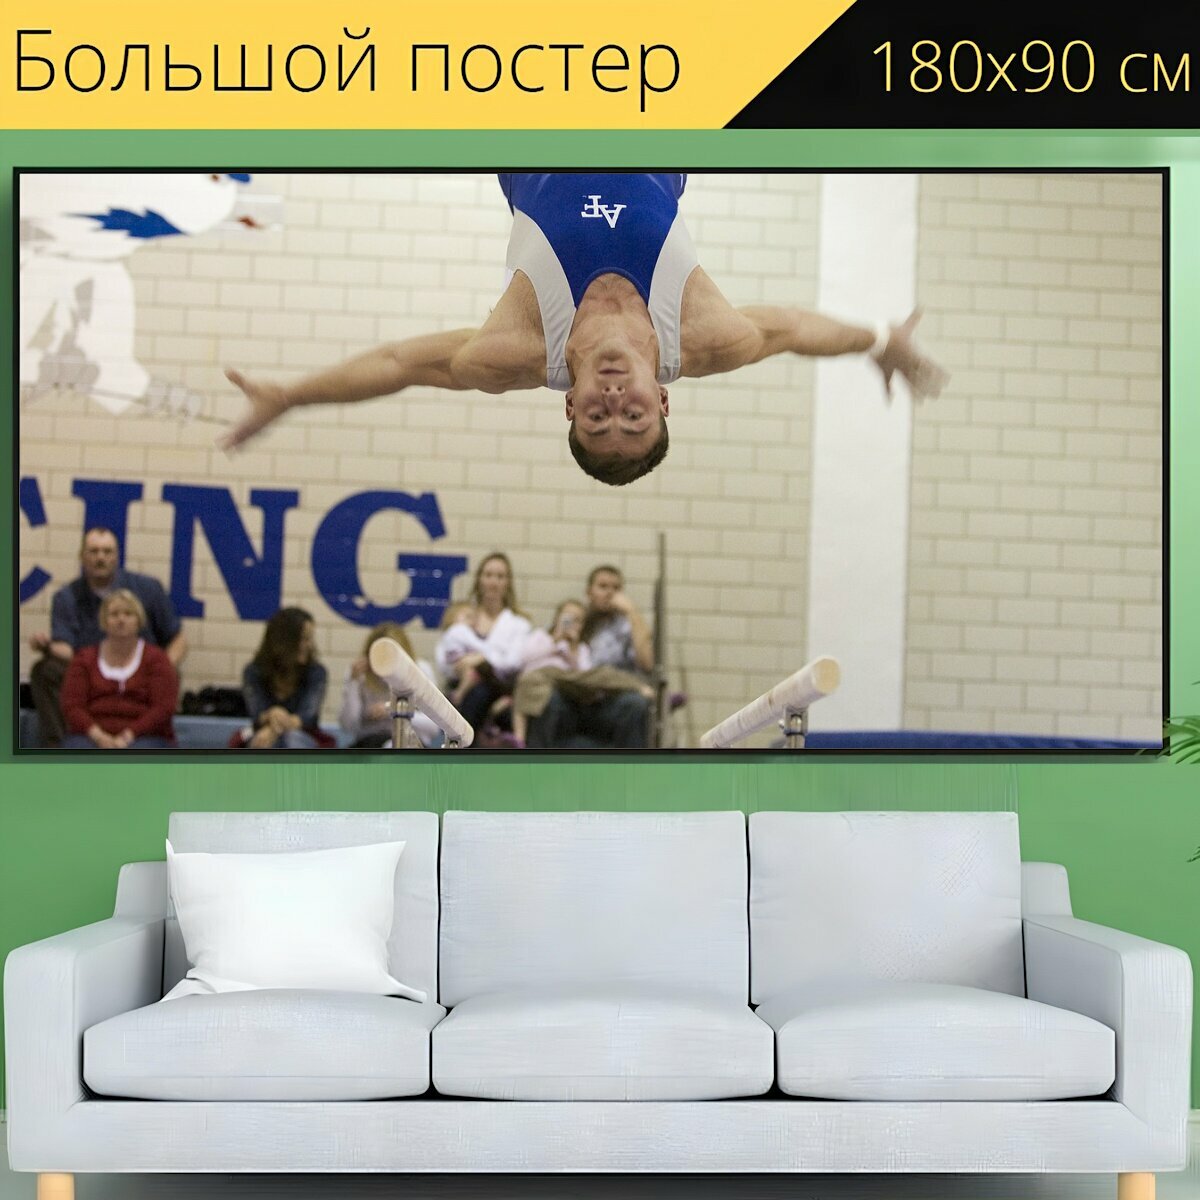 Большой постер "Гимнастика, гимнастка, спортсмен" 180 x 90 см. для интерьера